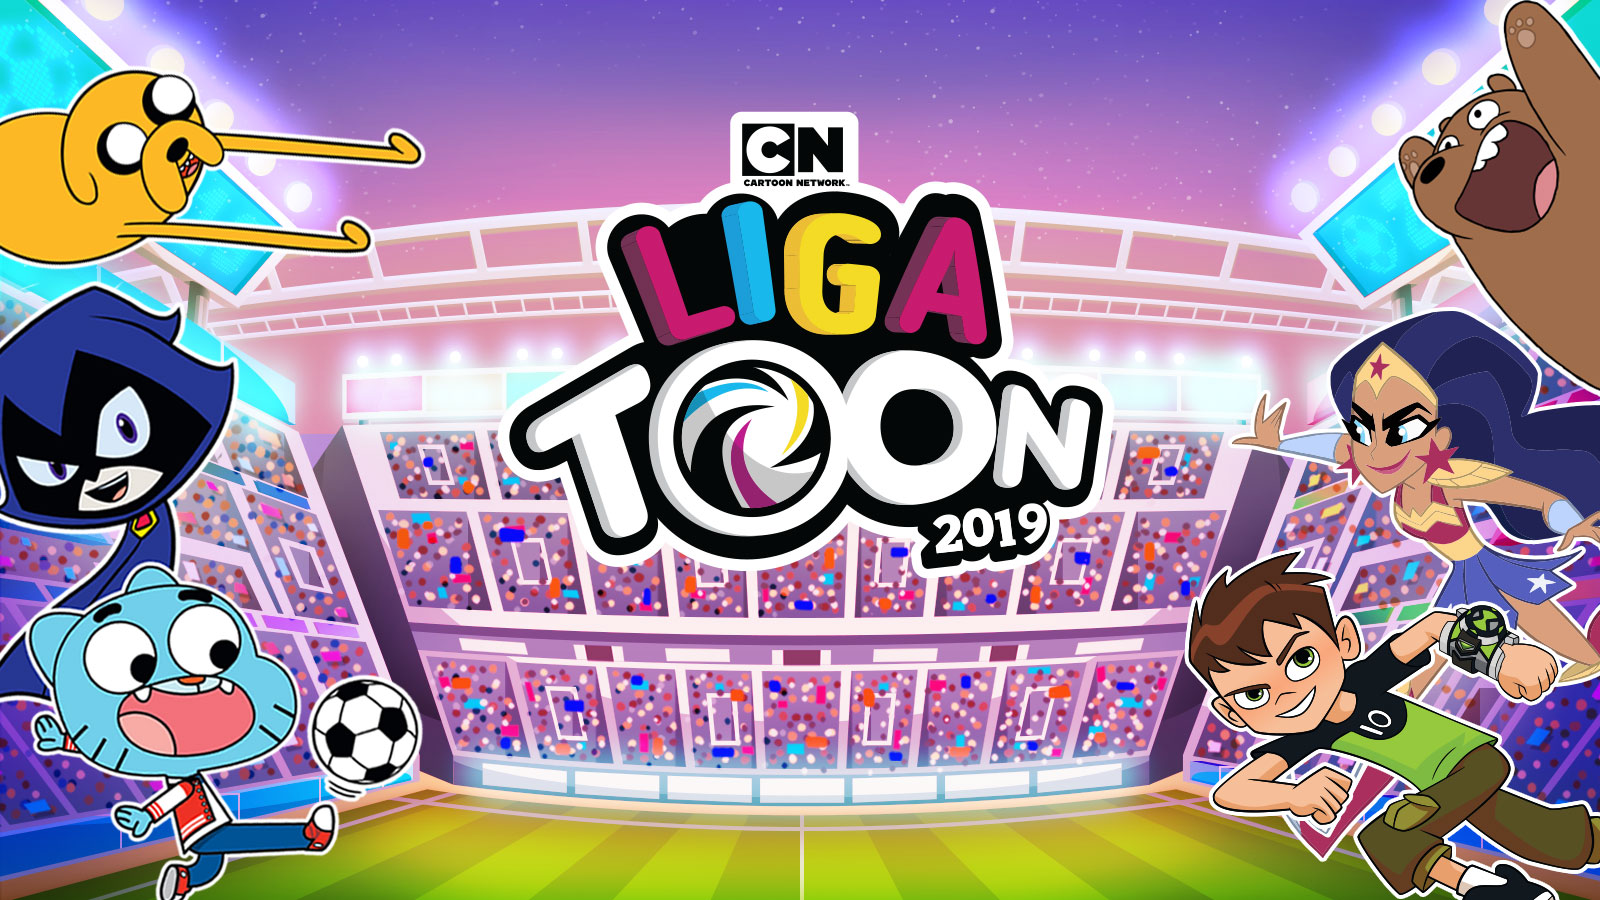 Jogo Toon Cup 2018 no Jogos 360